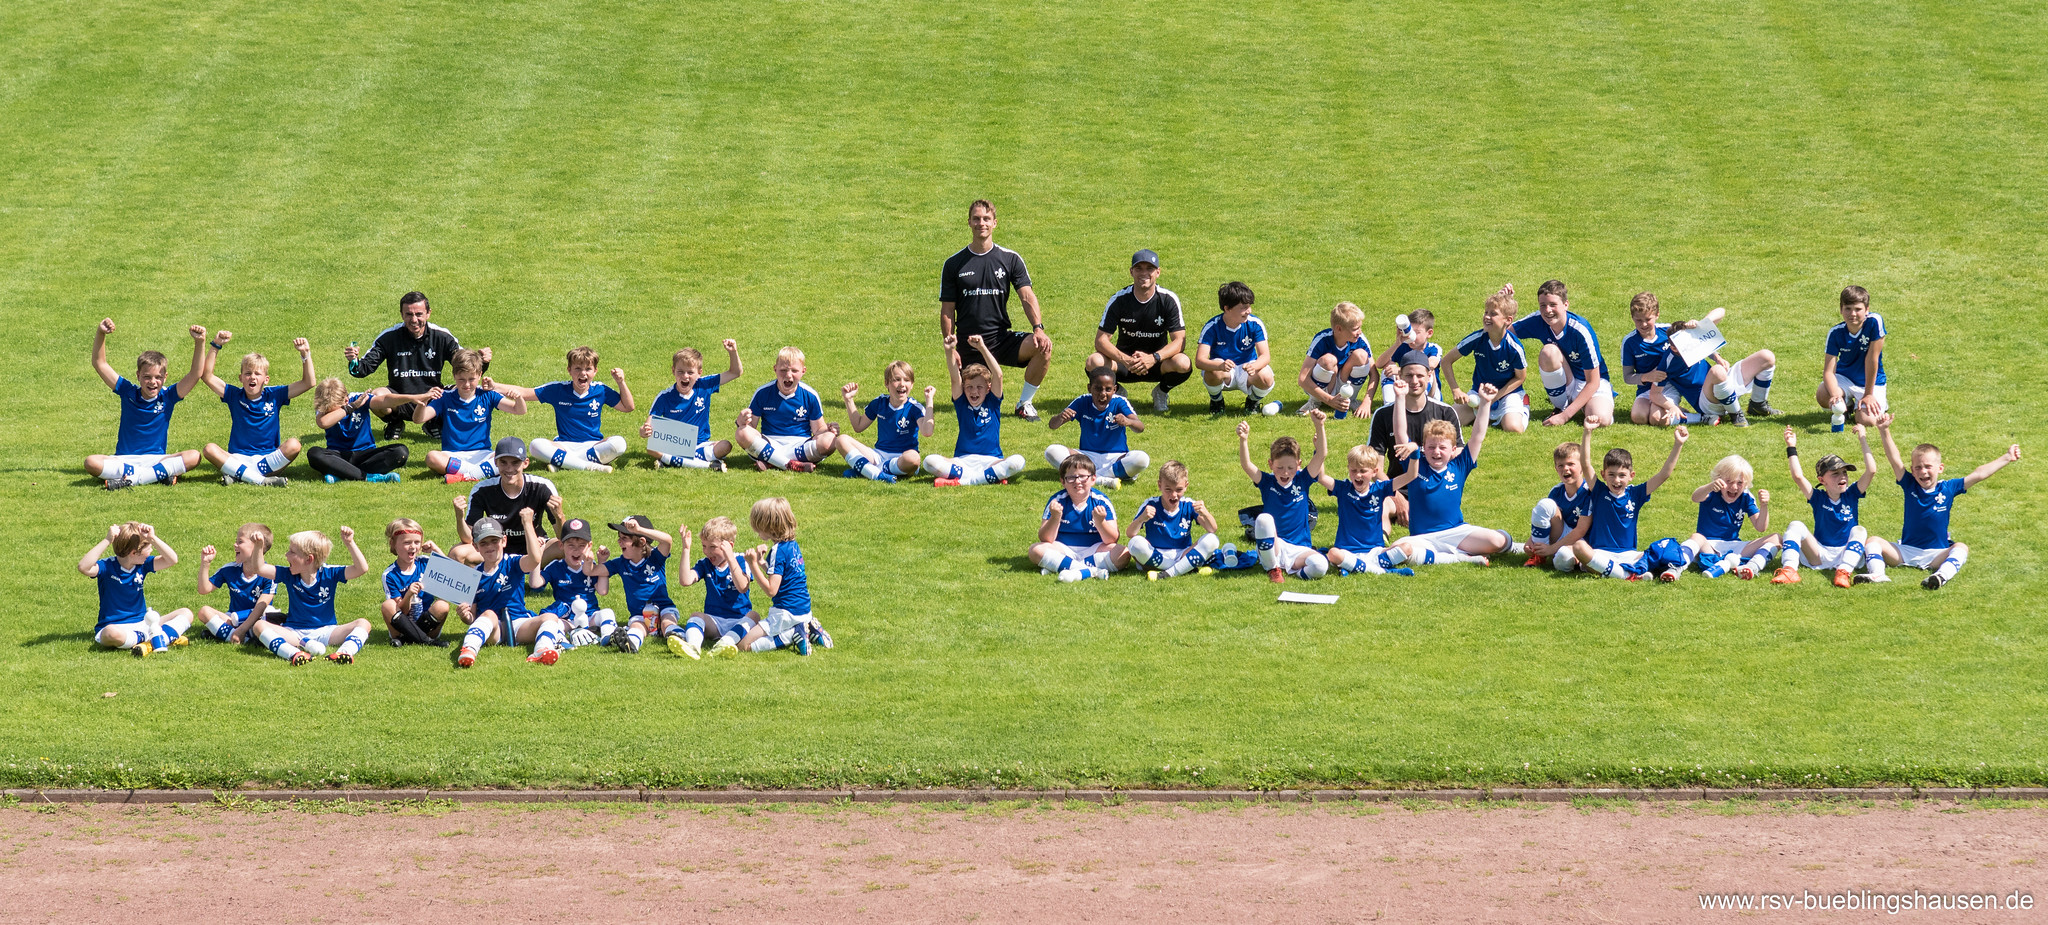 You are currently viewing Lilien-Fußball-Camp 2020: 40 Kinder kicken 4 Tage mit Riesenspaß beim RSV